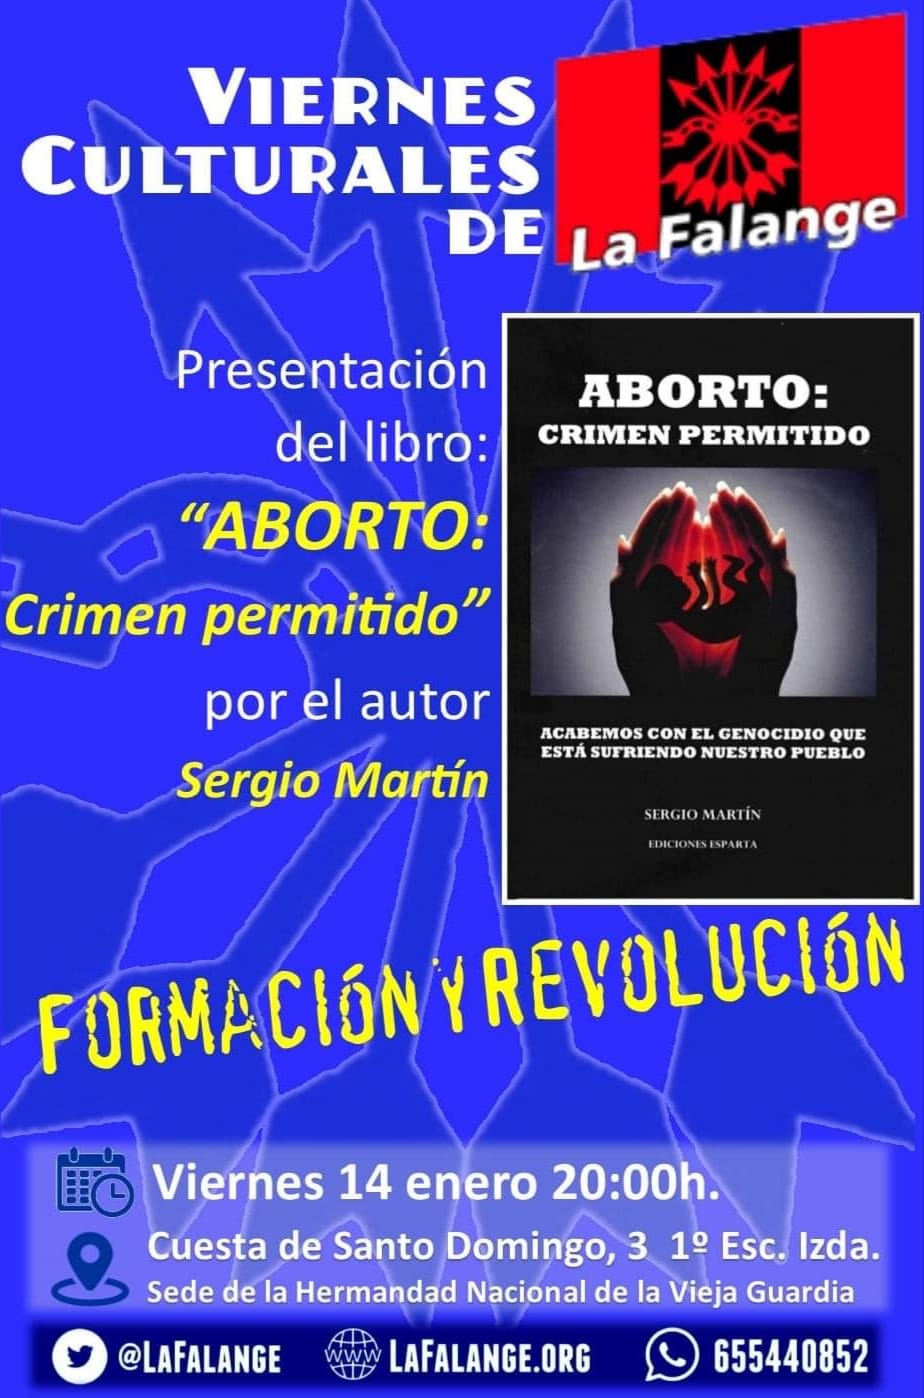 PRESENTACIÓN DEL LIBRO "Aborto: crimen permitido" a cargo de su autor, Sergio Martín.